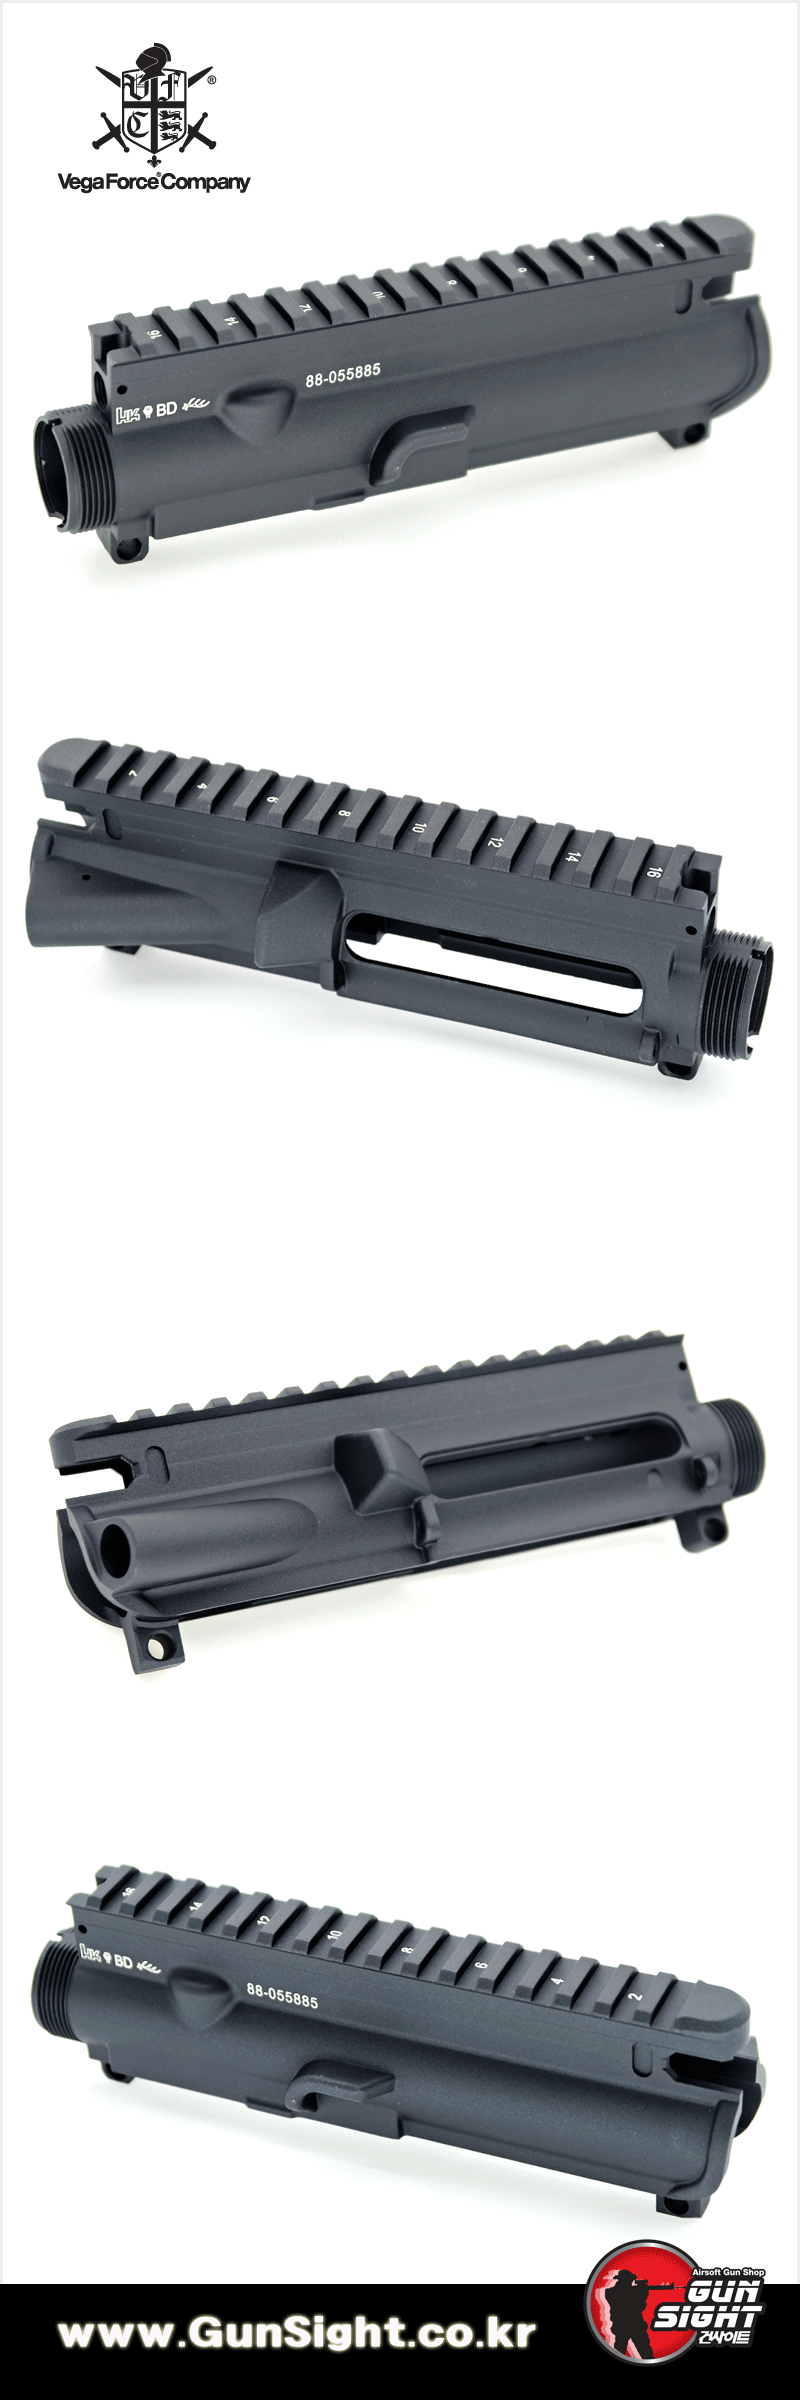 VFC UMAREX HK416A5 Upper Receiver (BLACK) .